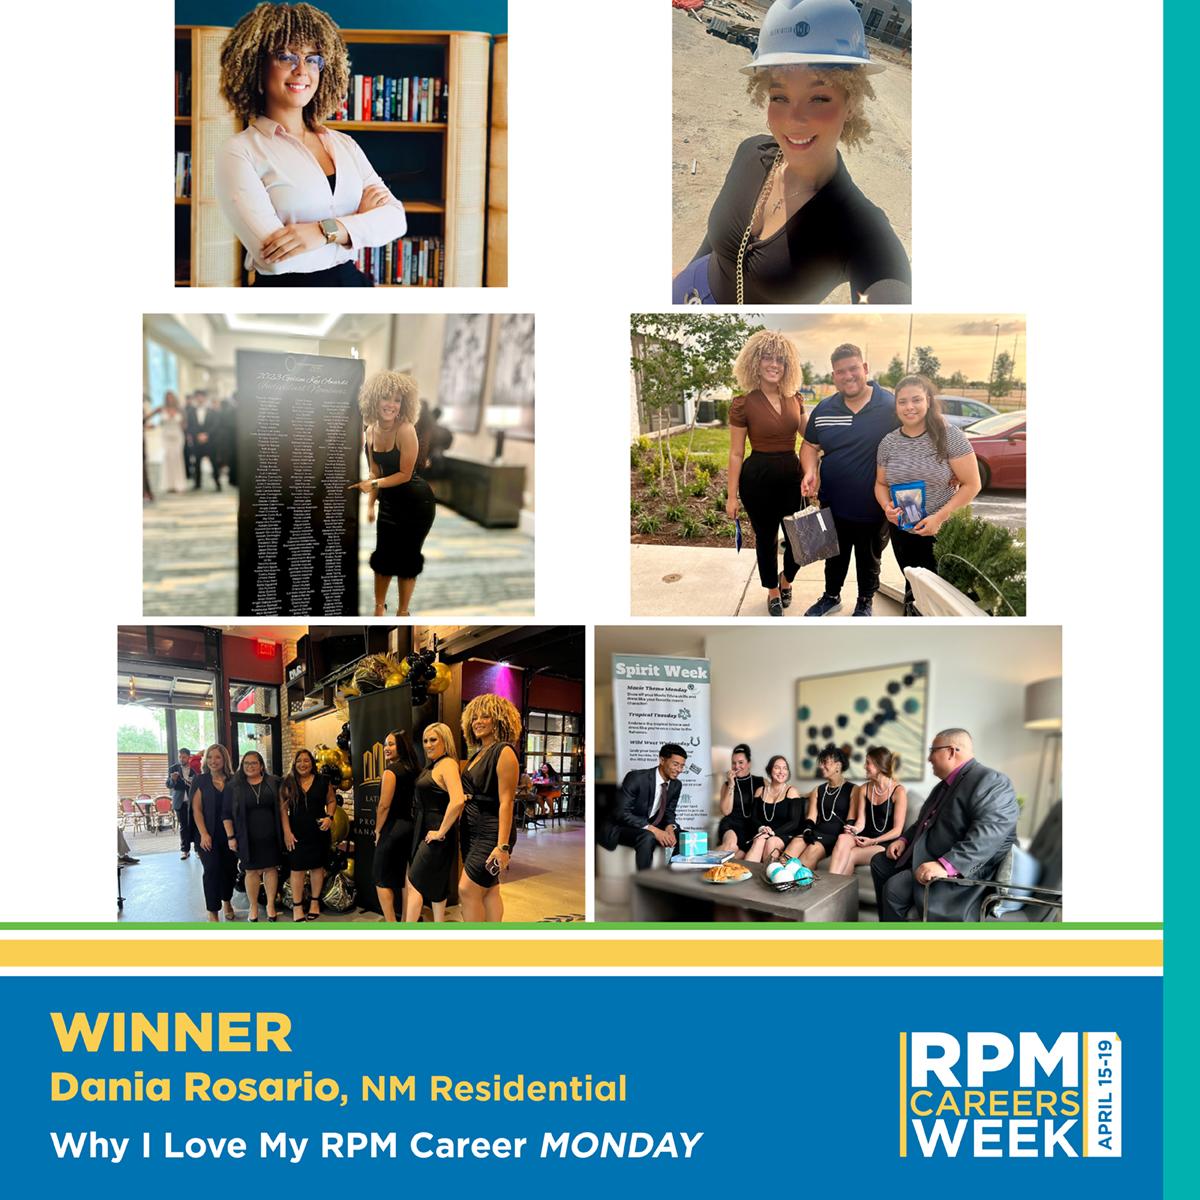 rpm careers week monday winner, dania rosario